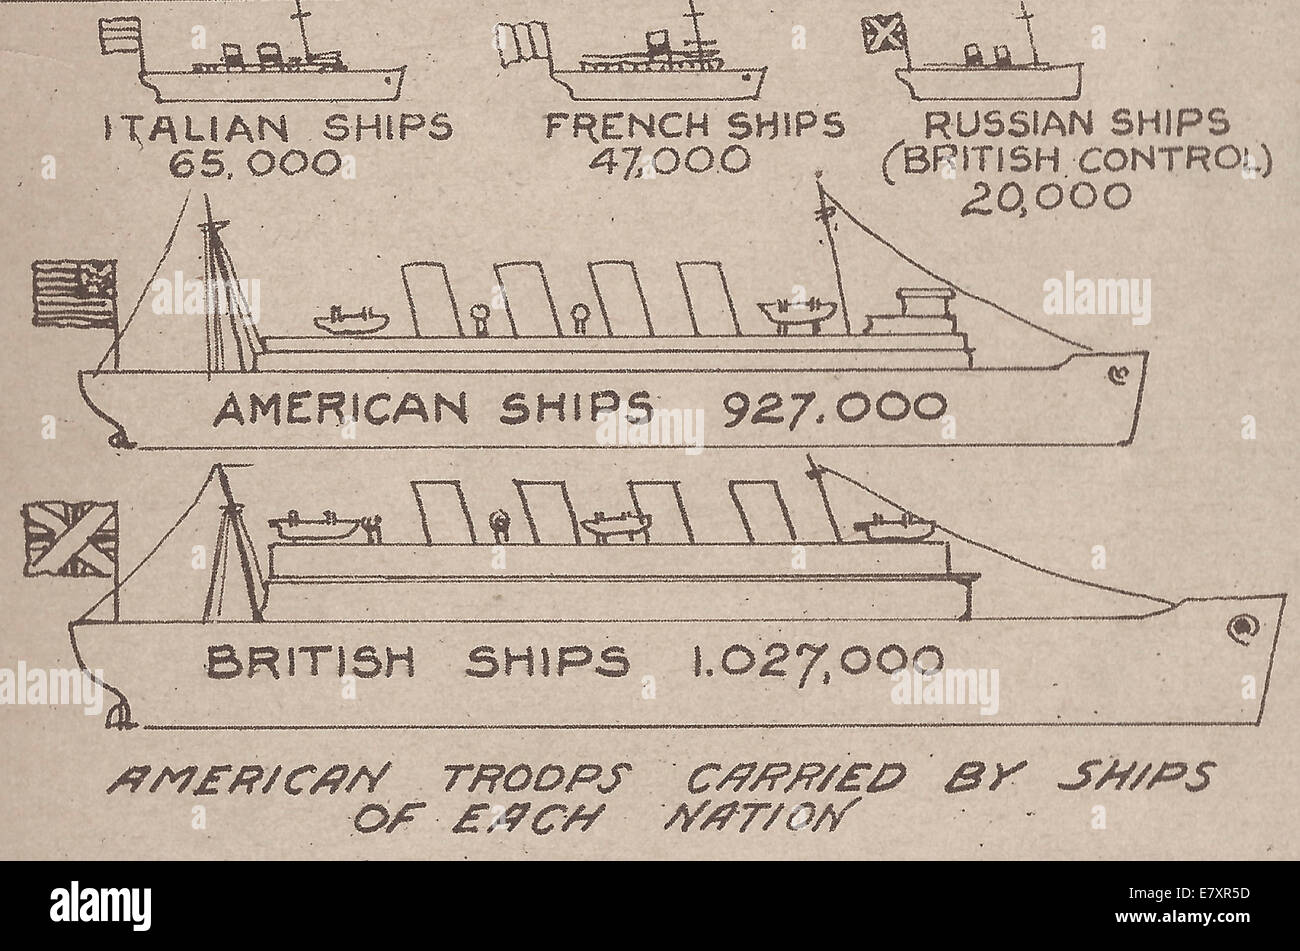 Les troupes américaines transportées par les navires de chaque nation - WWI Stats Banque D'Images